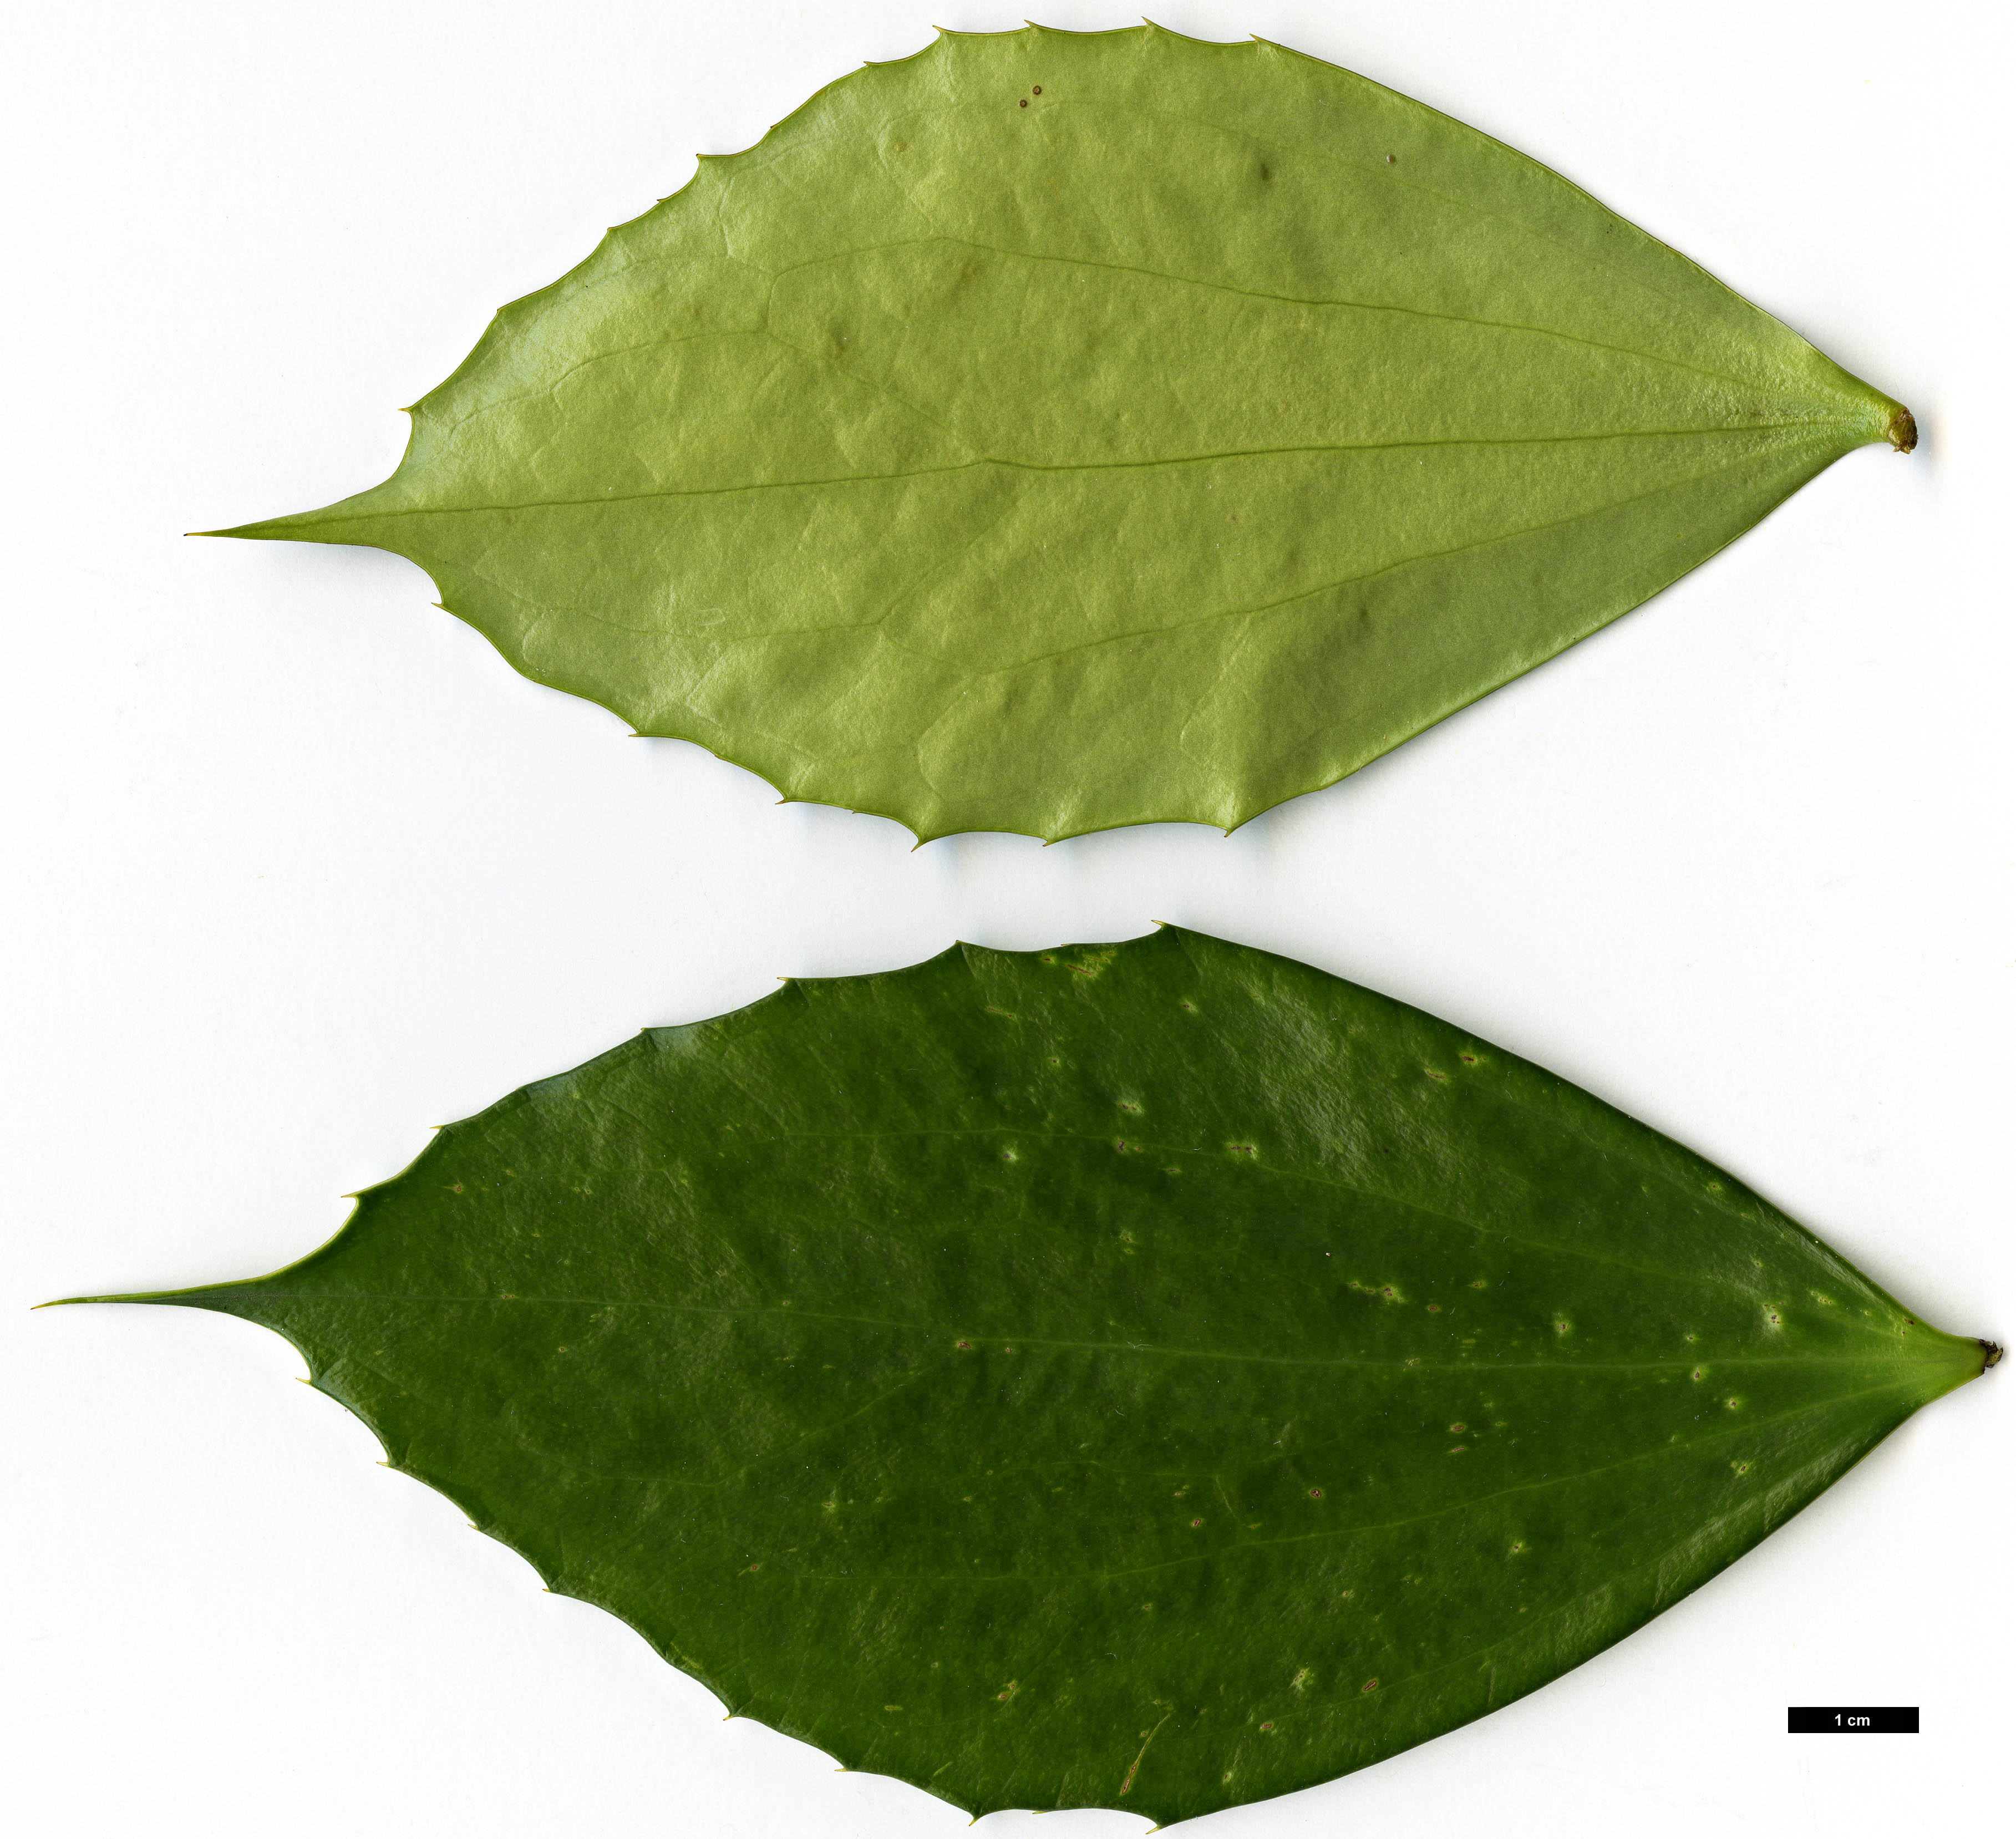 High resolution image: Family: Berberidaceae - Genus: Mahonia - Taxon: cfr. nitens